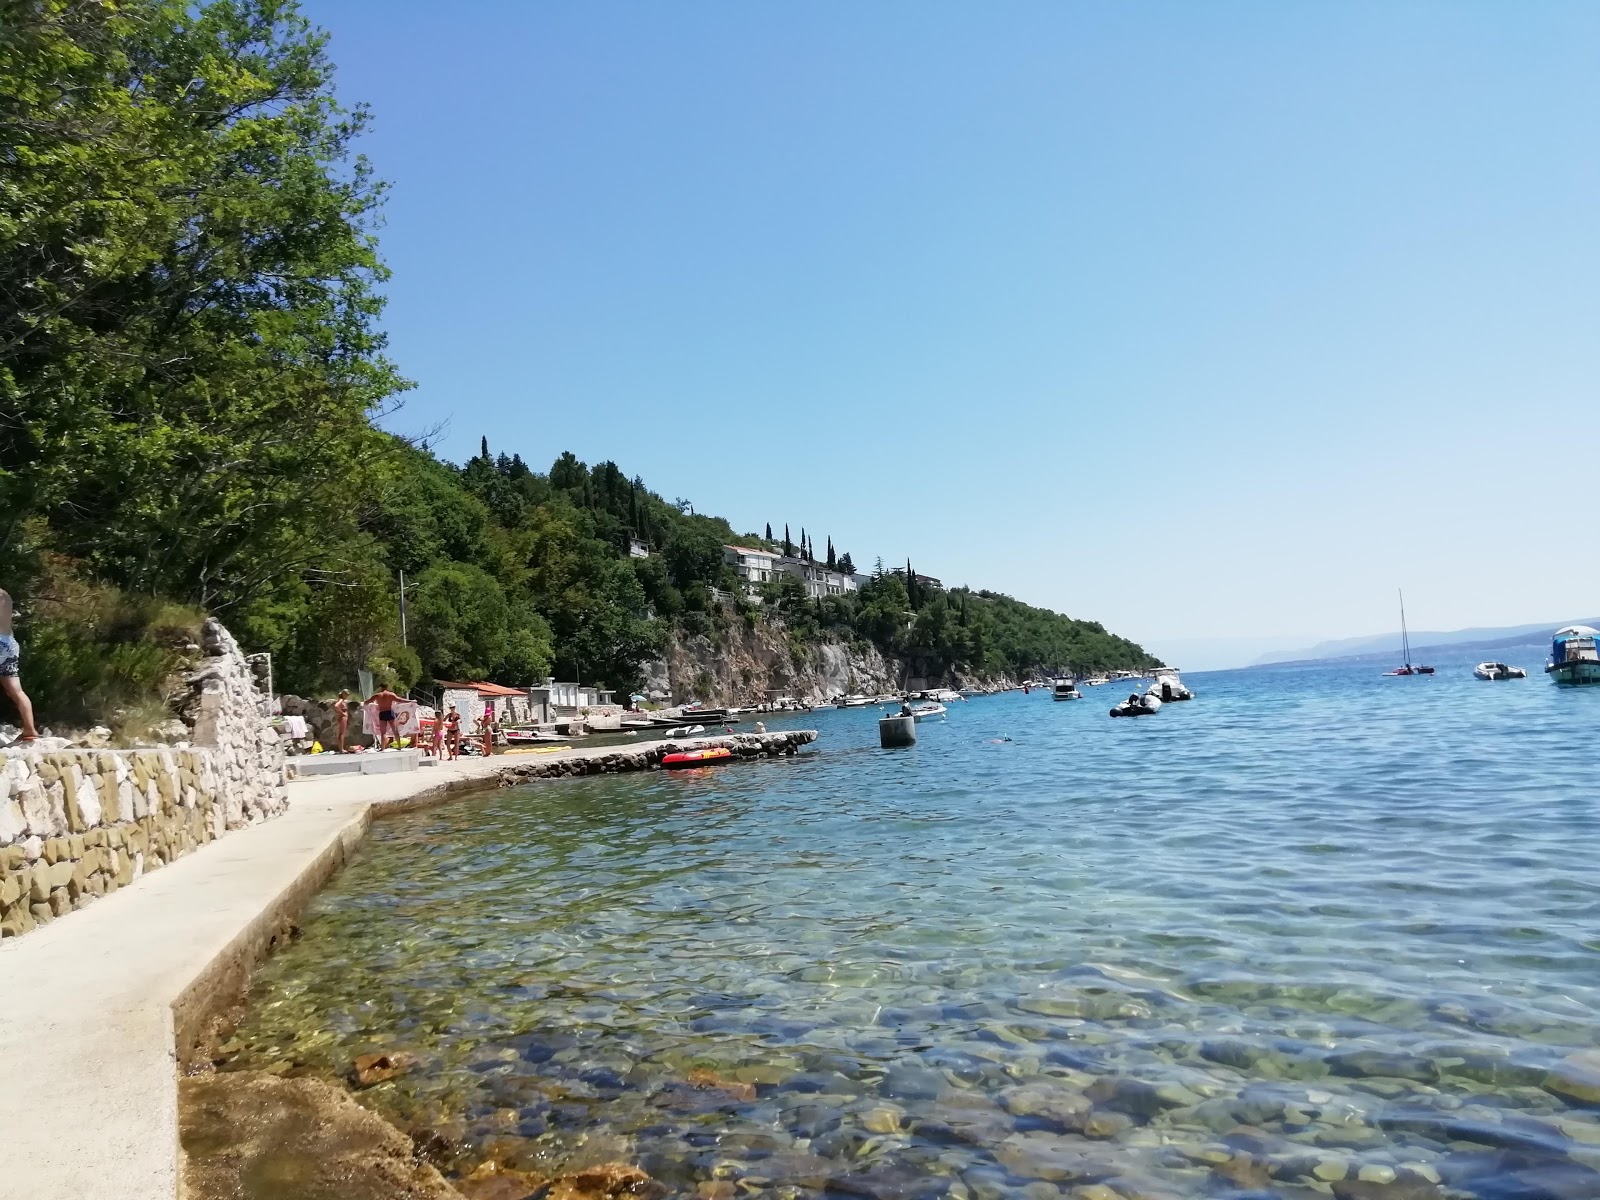 Fotografie cu Havisce beach - locul popular printre cunoscătorii de relaxare